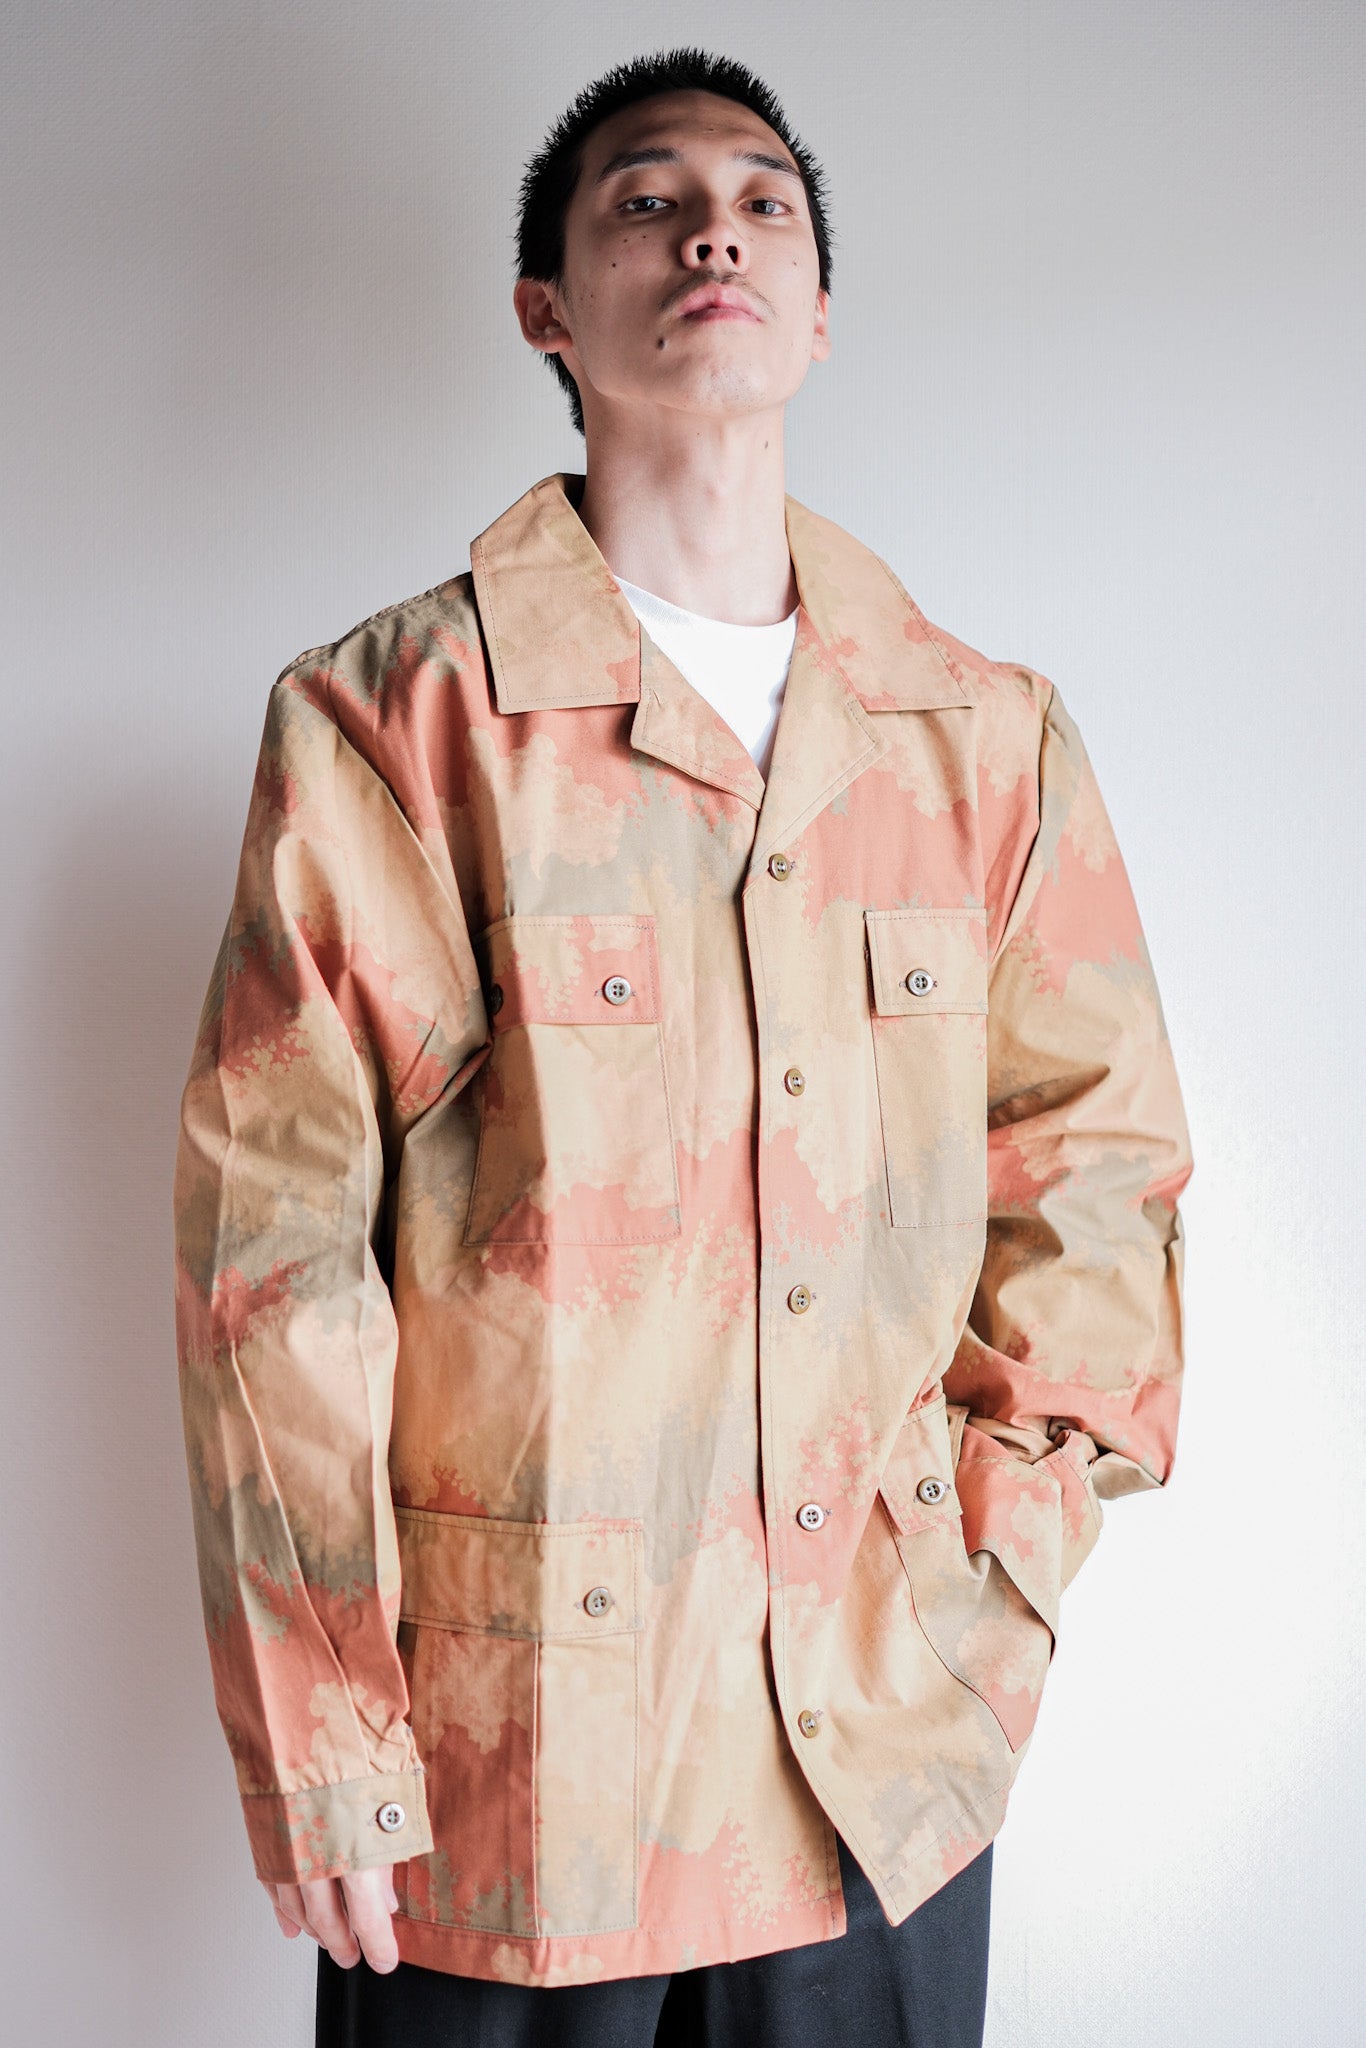 Czea lovakian army detector pattern camouflage field jacket size. 52 "test sample" "dead stock"